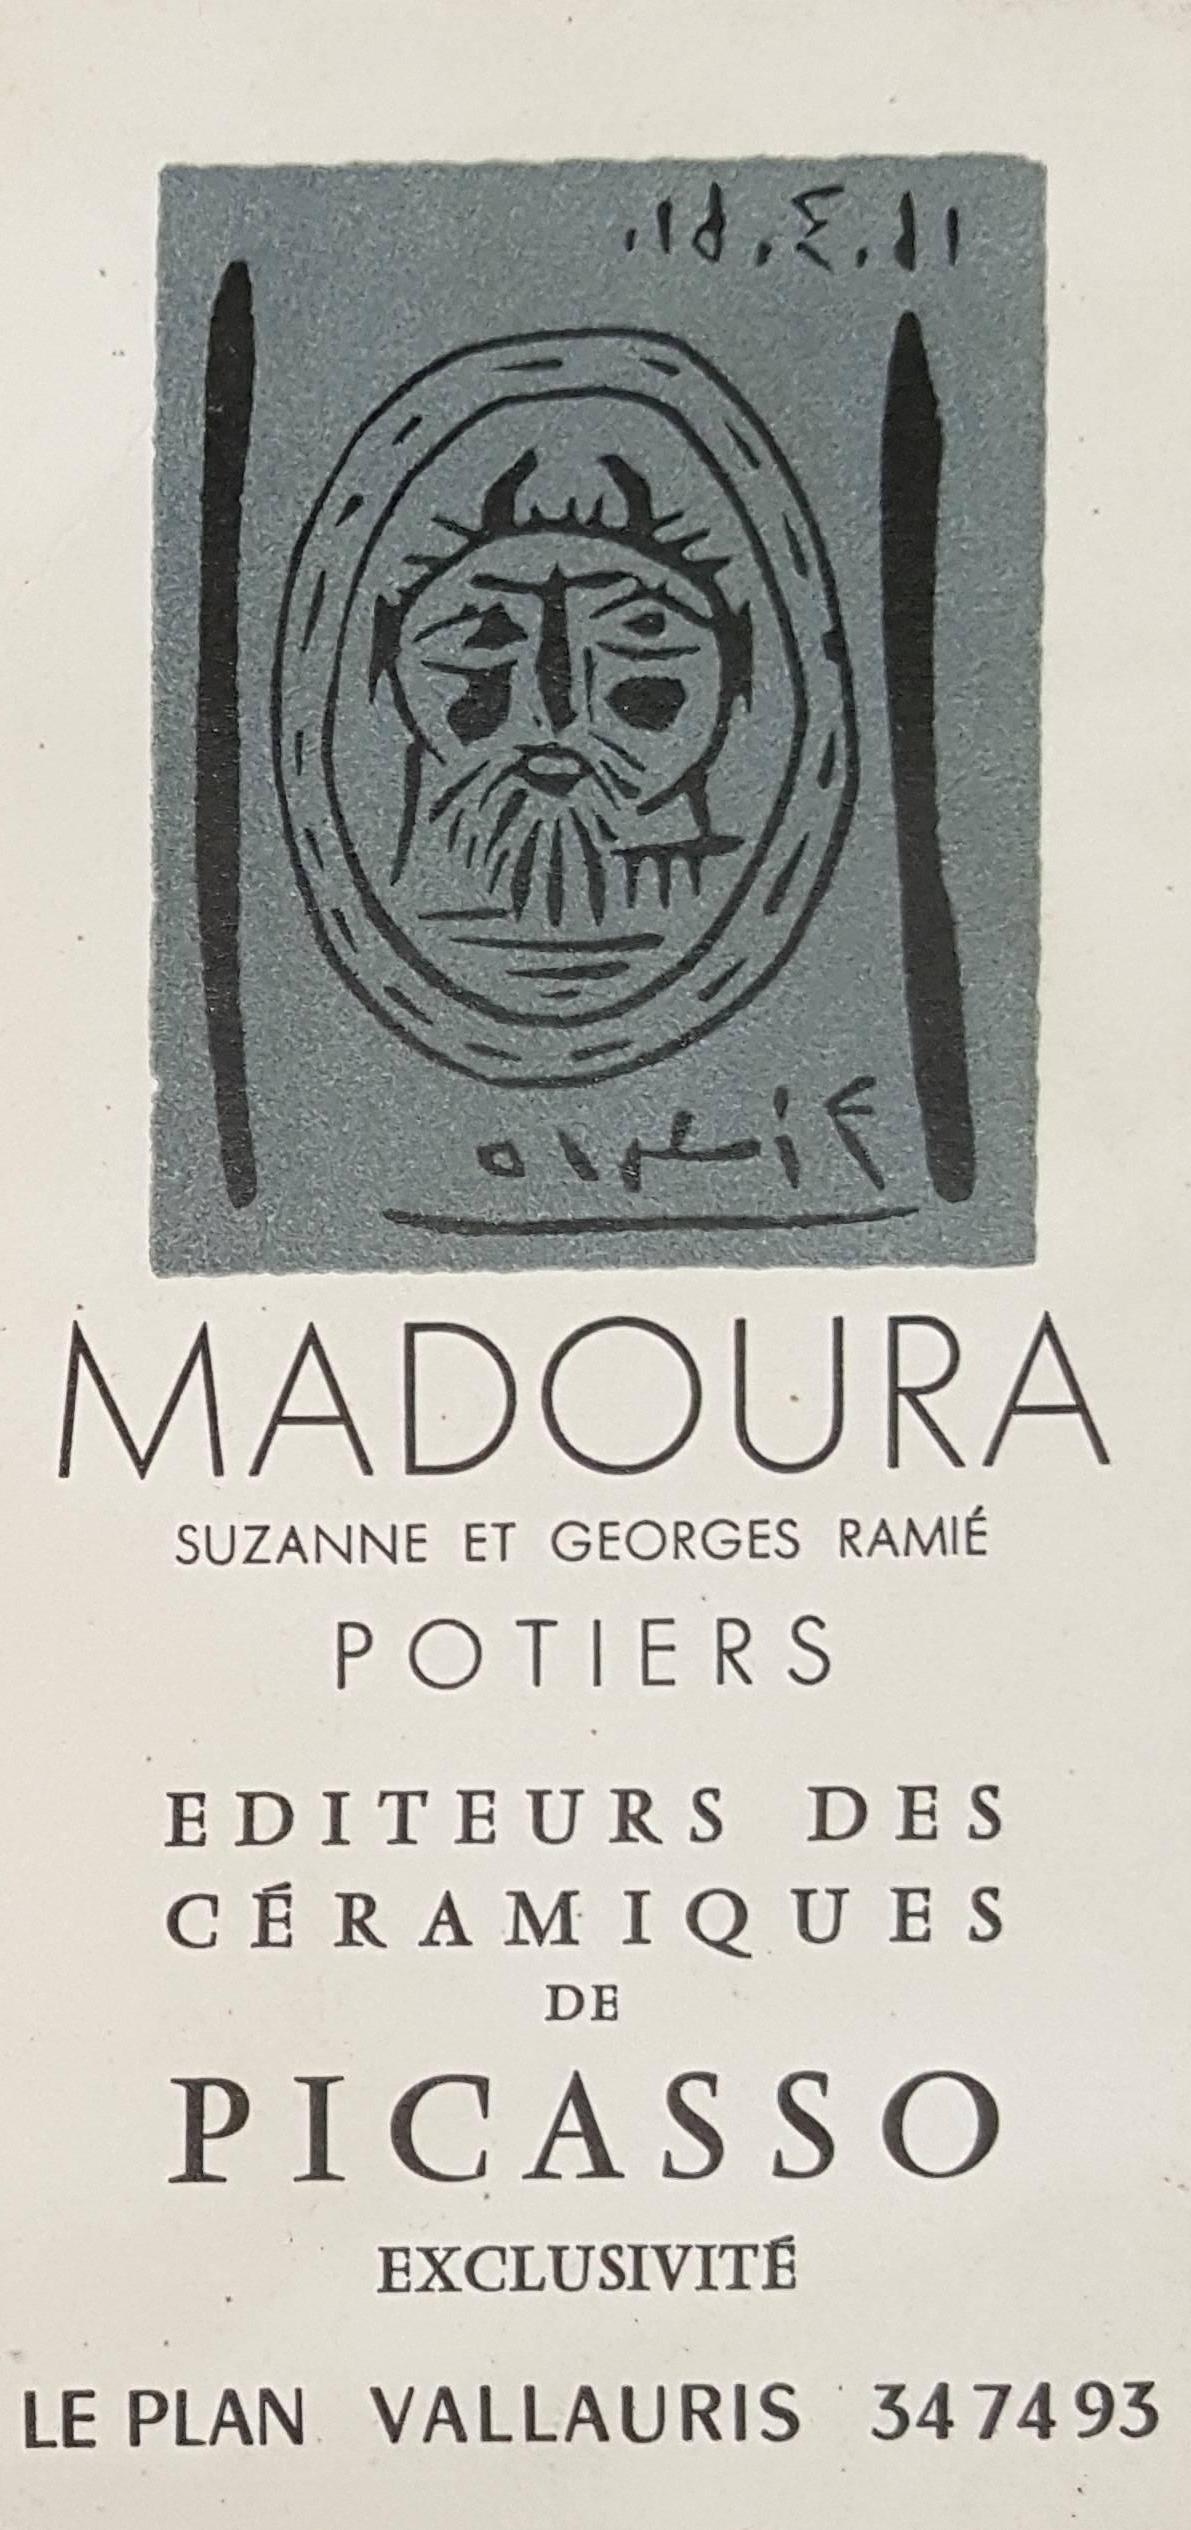 Pablo Picasso Figurative Print - Faun Head - Original linocut (invitation card for exhibition in Madoura Gallery)